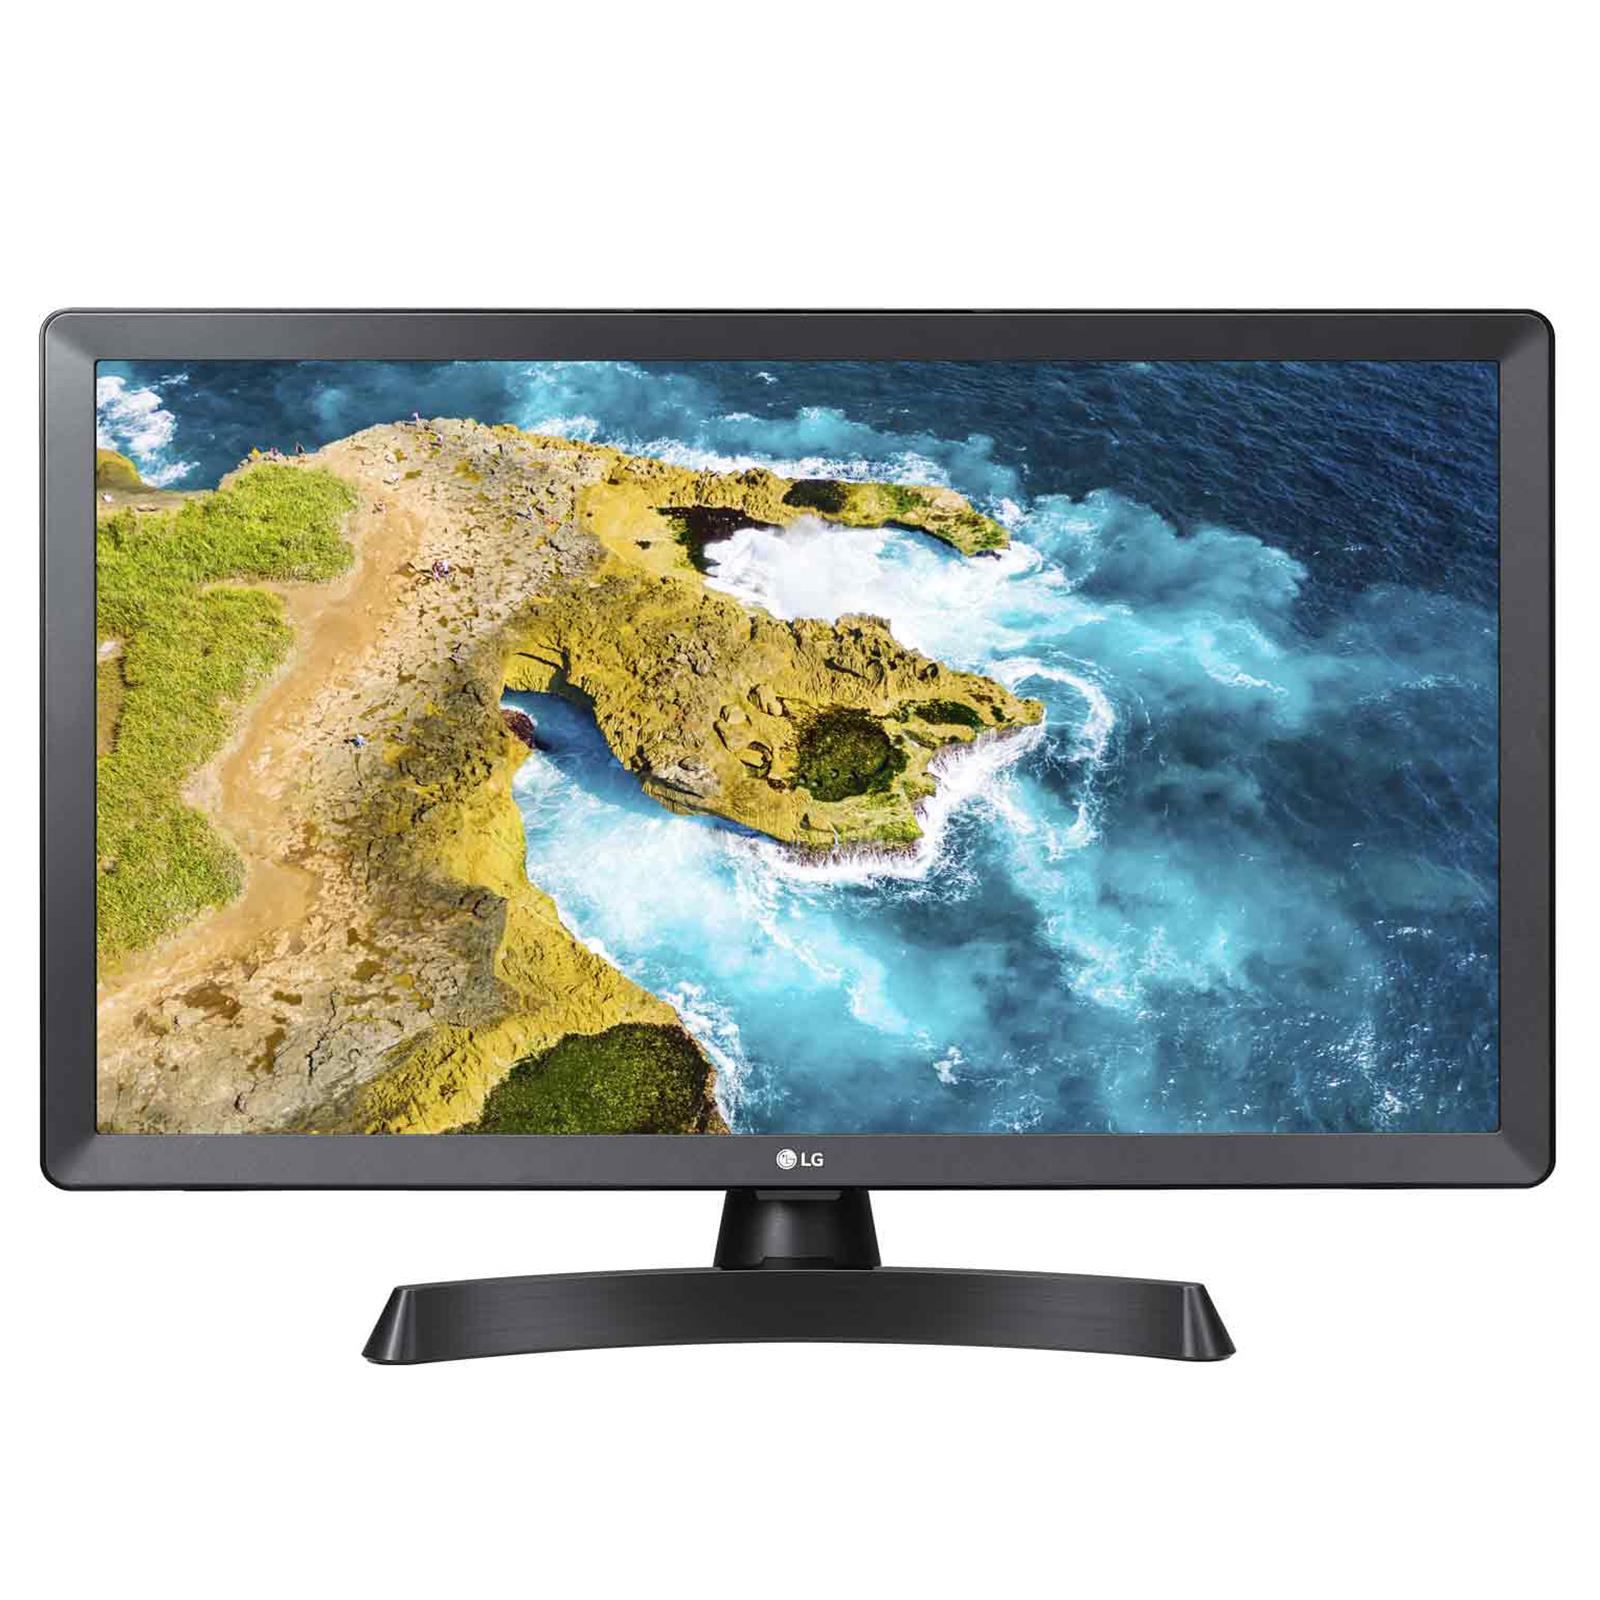 LG 24TQ520S Monitor Tv